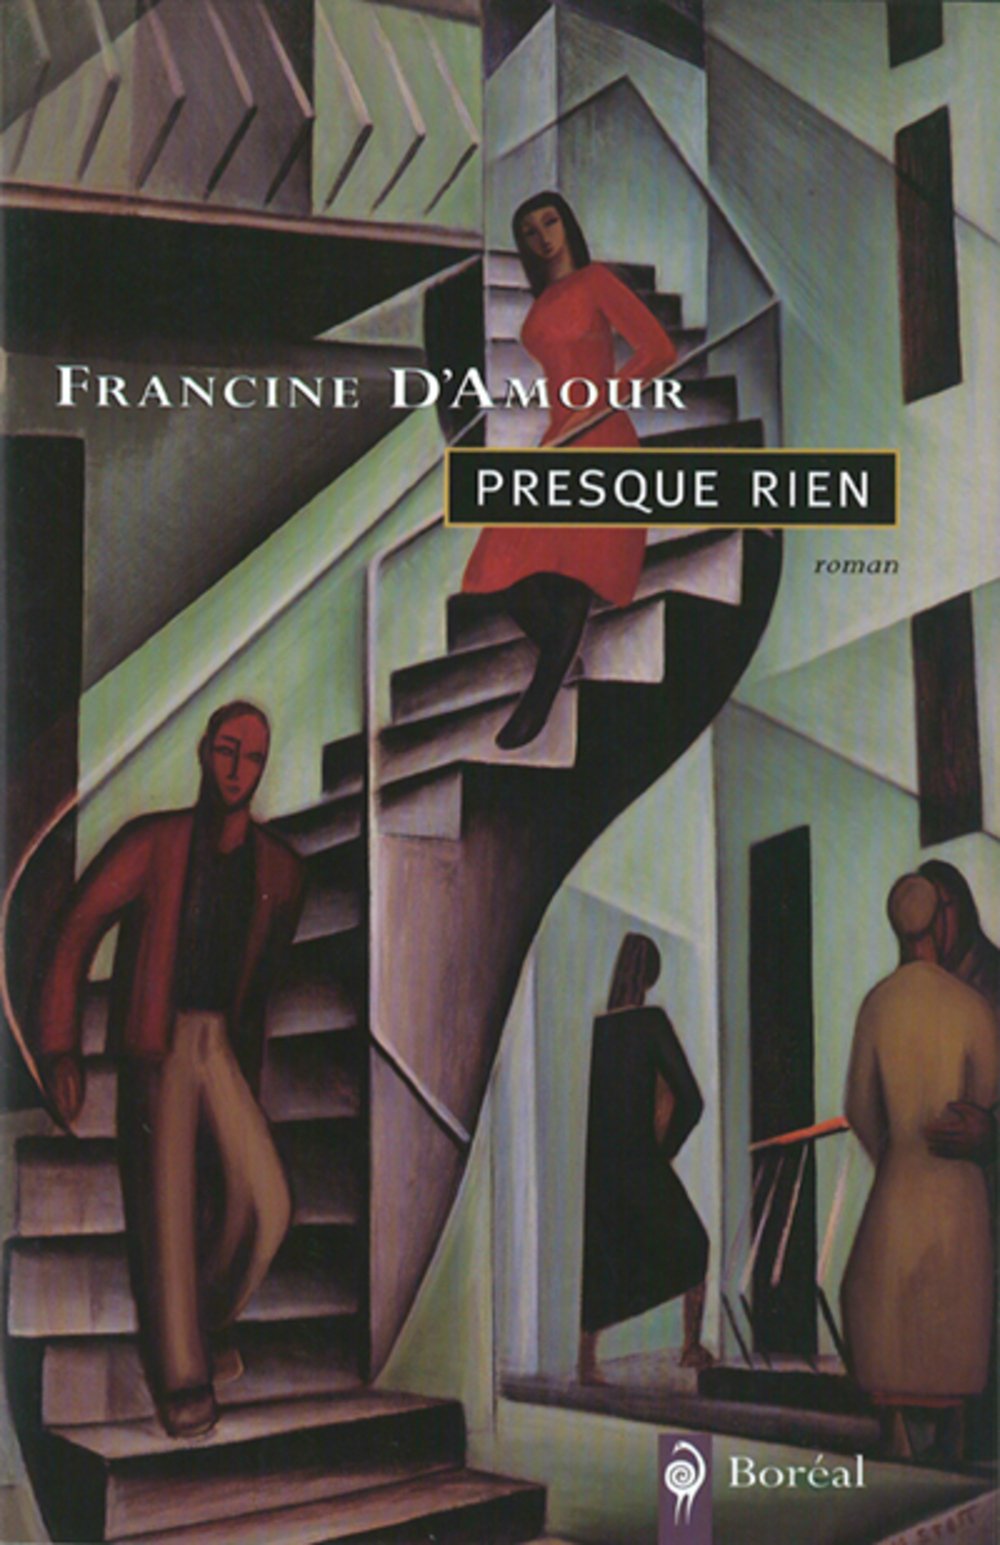 Livre ISBN 2890527441 Presque rien (Francine d'Amour)